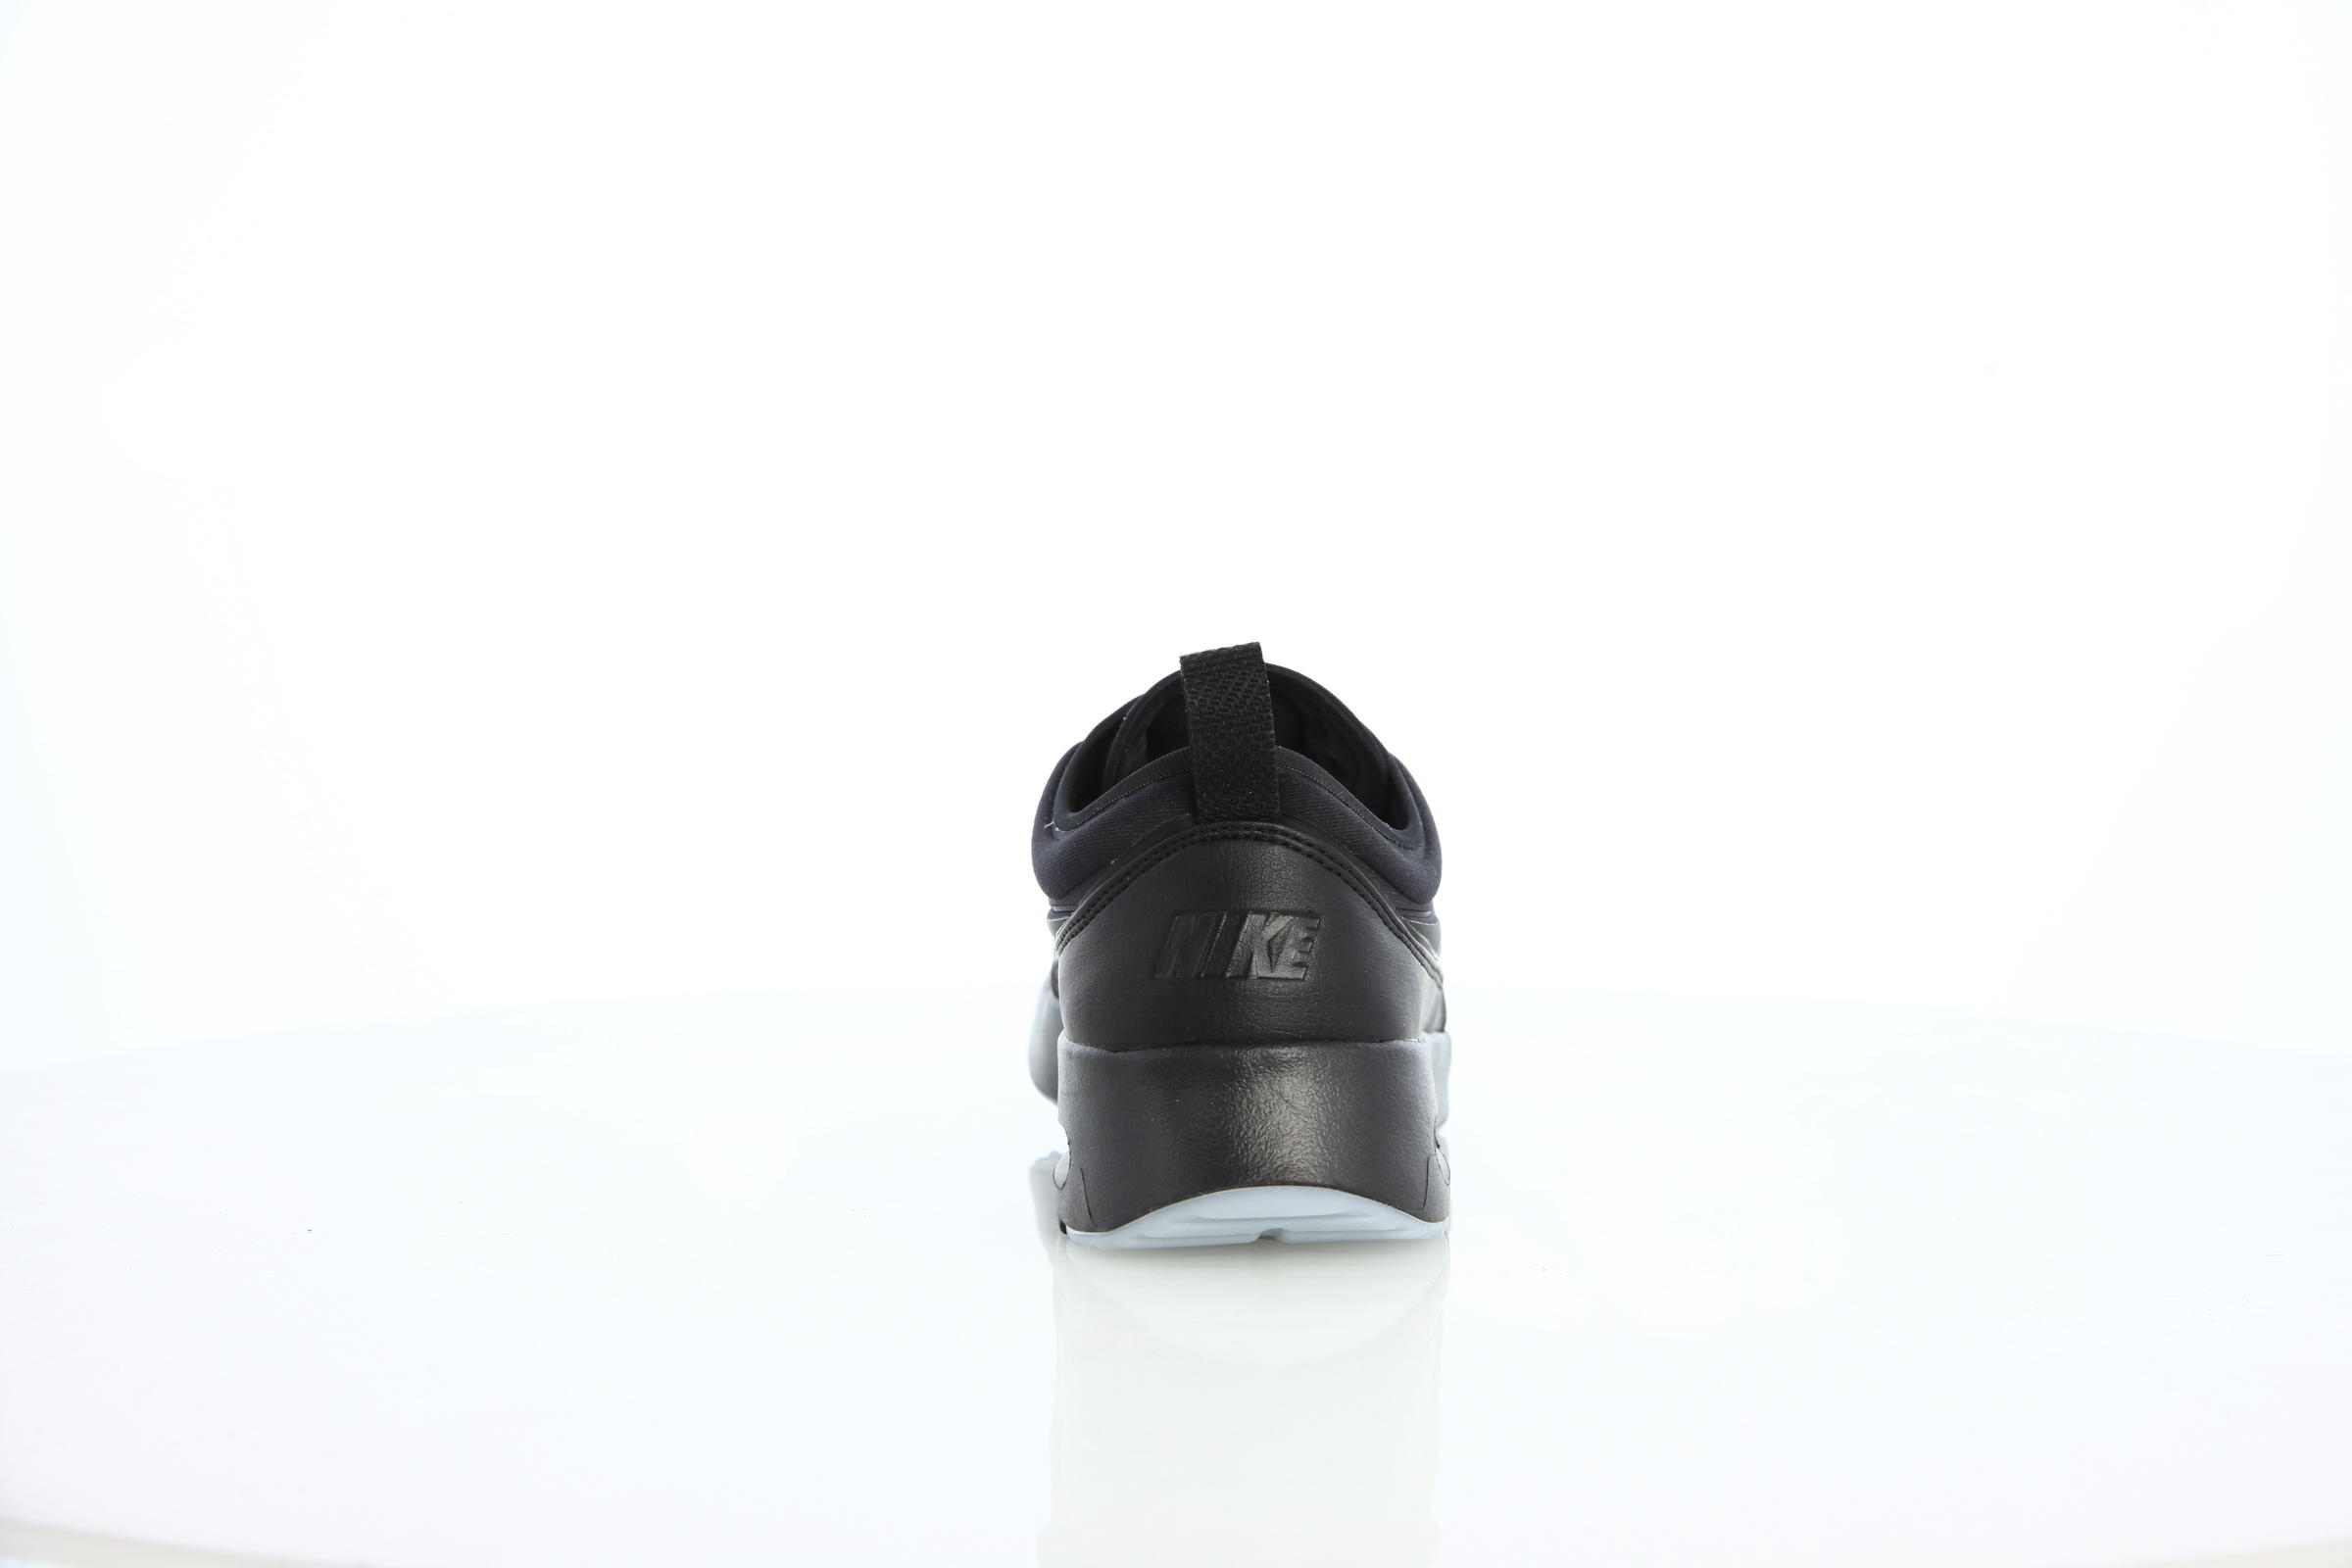 Nike Wmns Air Max Thea Ultra Premium "Black"